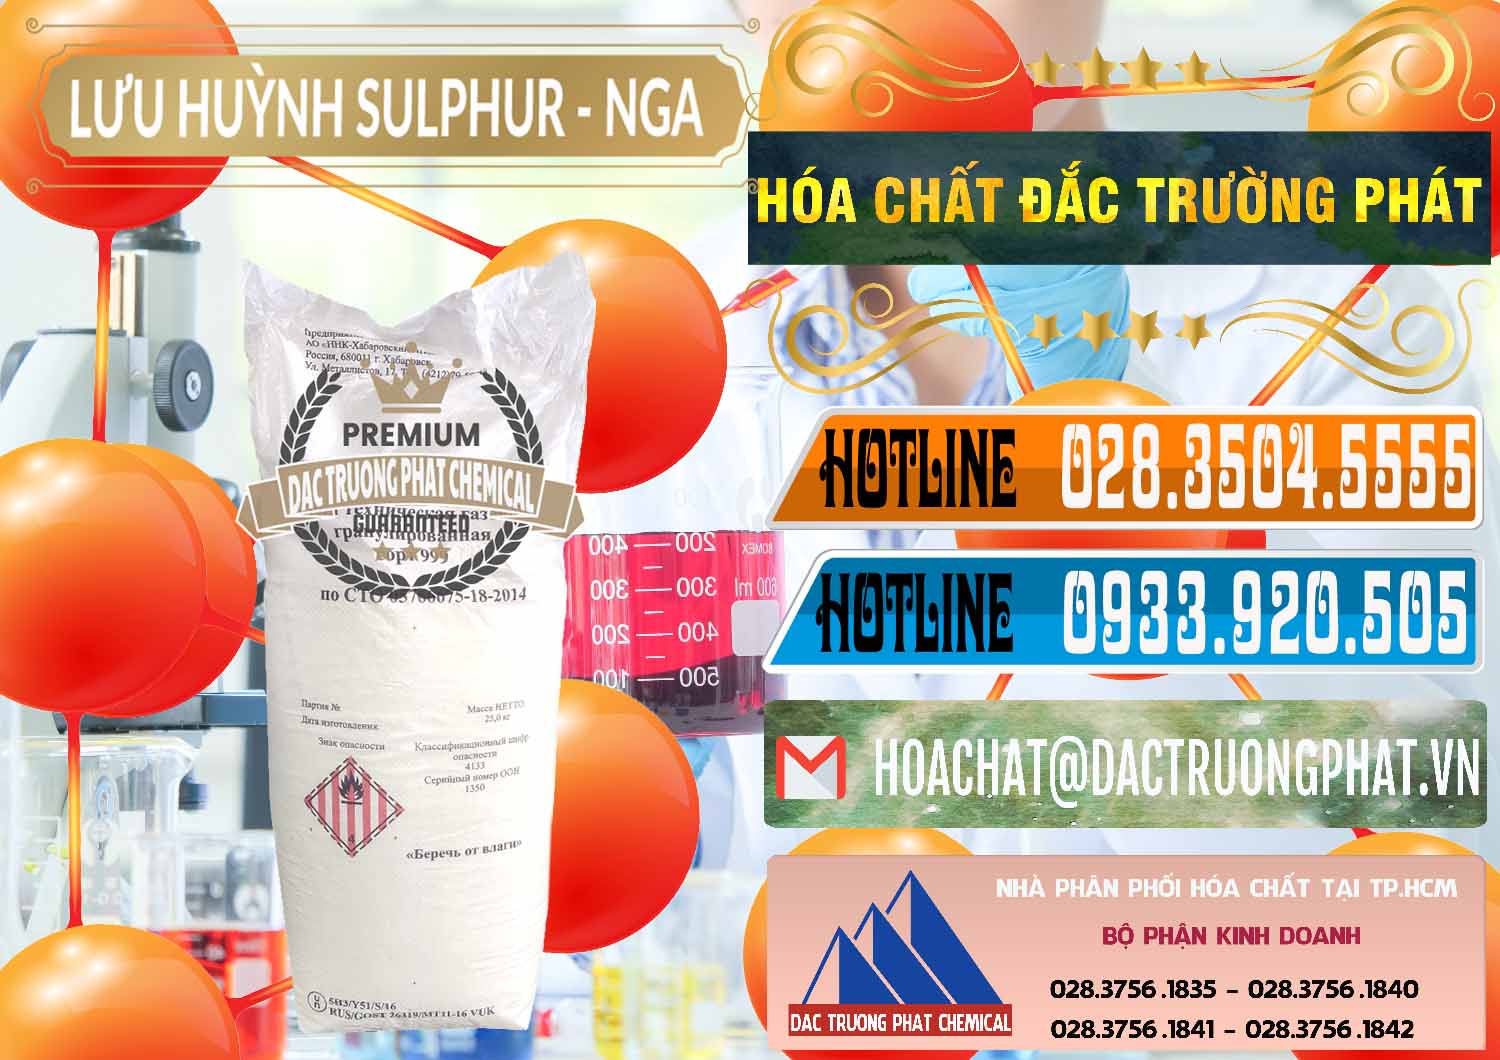 Công ty chuyên bán & phân phối Lưu huỳnh Hạt - Sulfur Nga Russia - 0200 - Cty chuyên kinh doanh ( cung cấp ) hóa chất tại TP.HCM - stmp.net